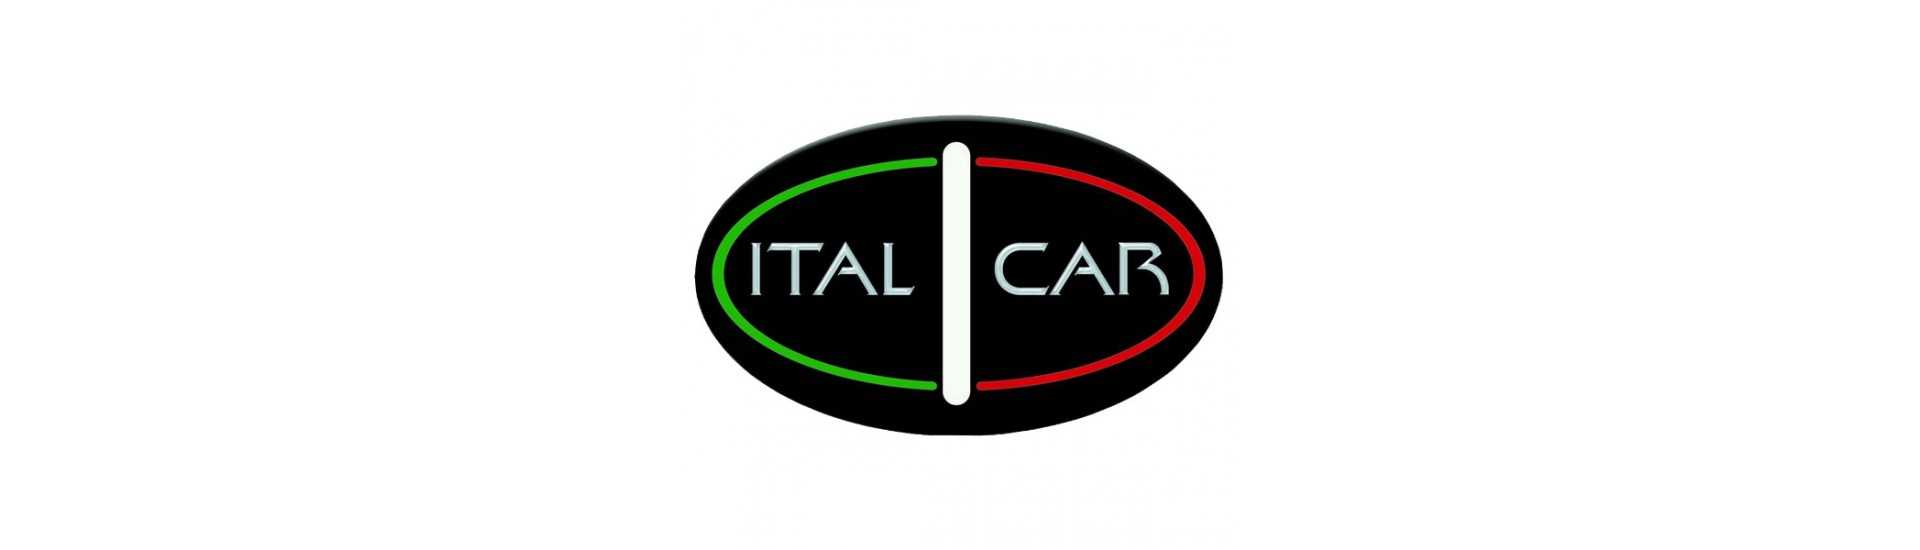 Silent bloc moteur au meilleur prix pour voiture sans permis Italcar